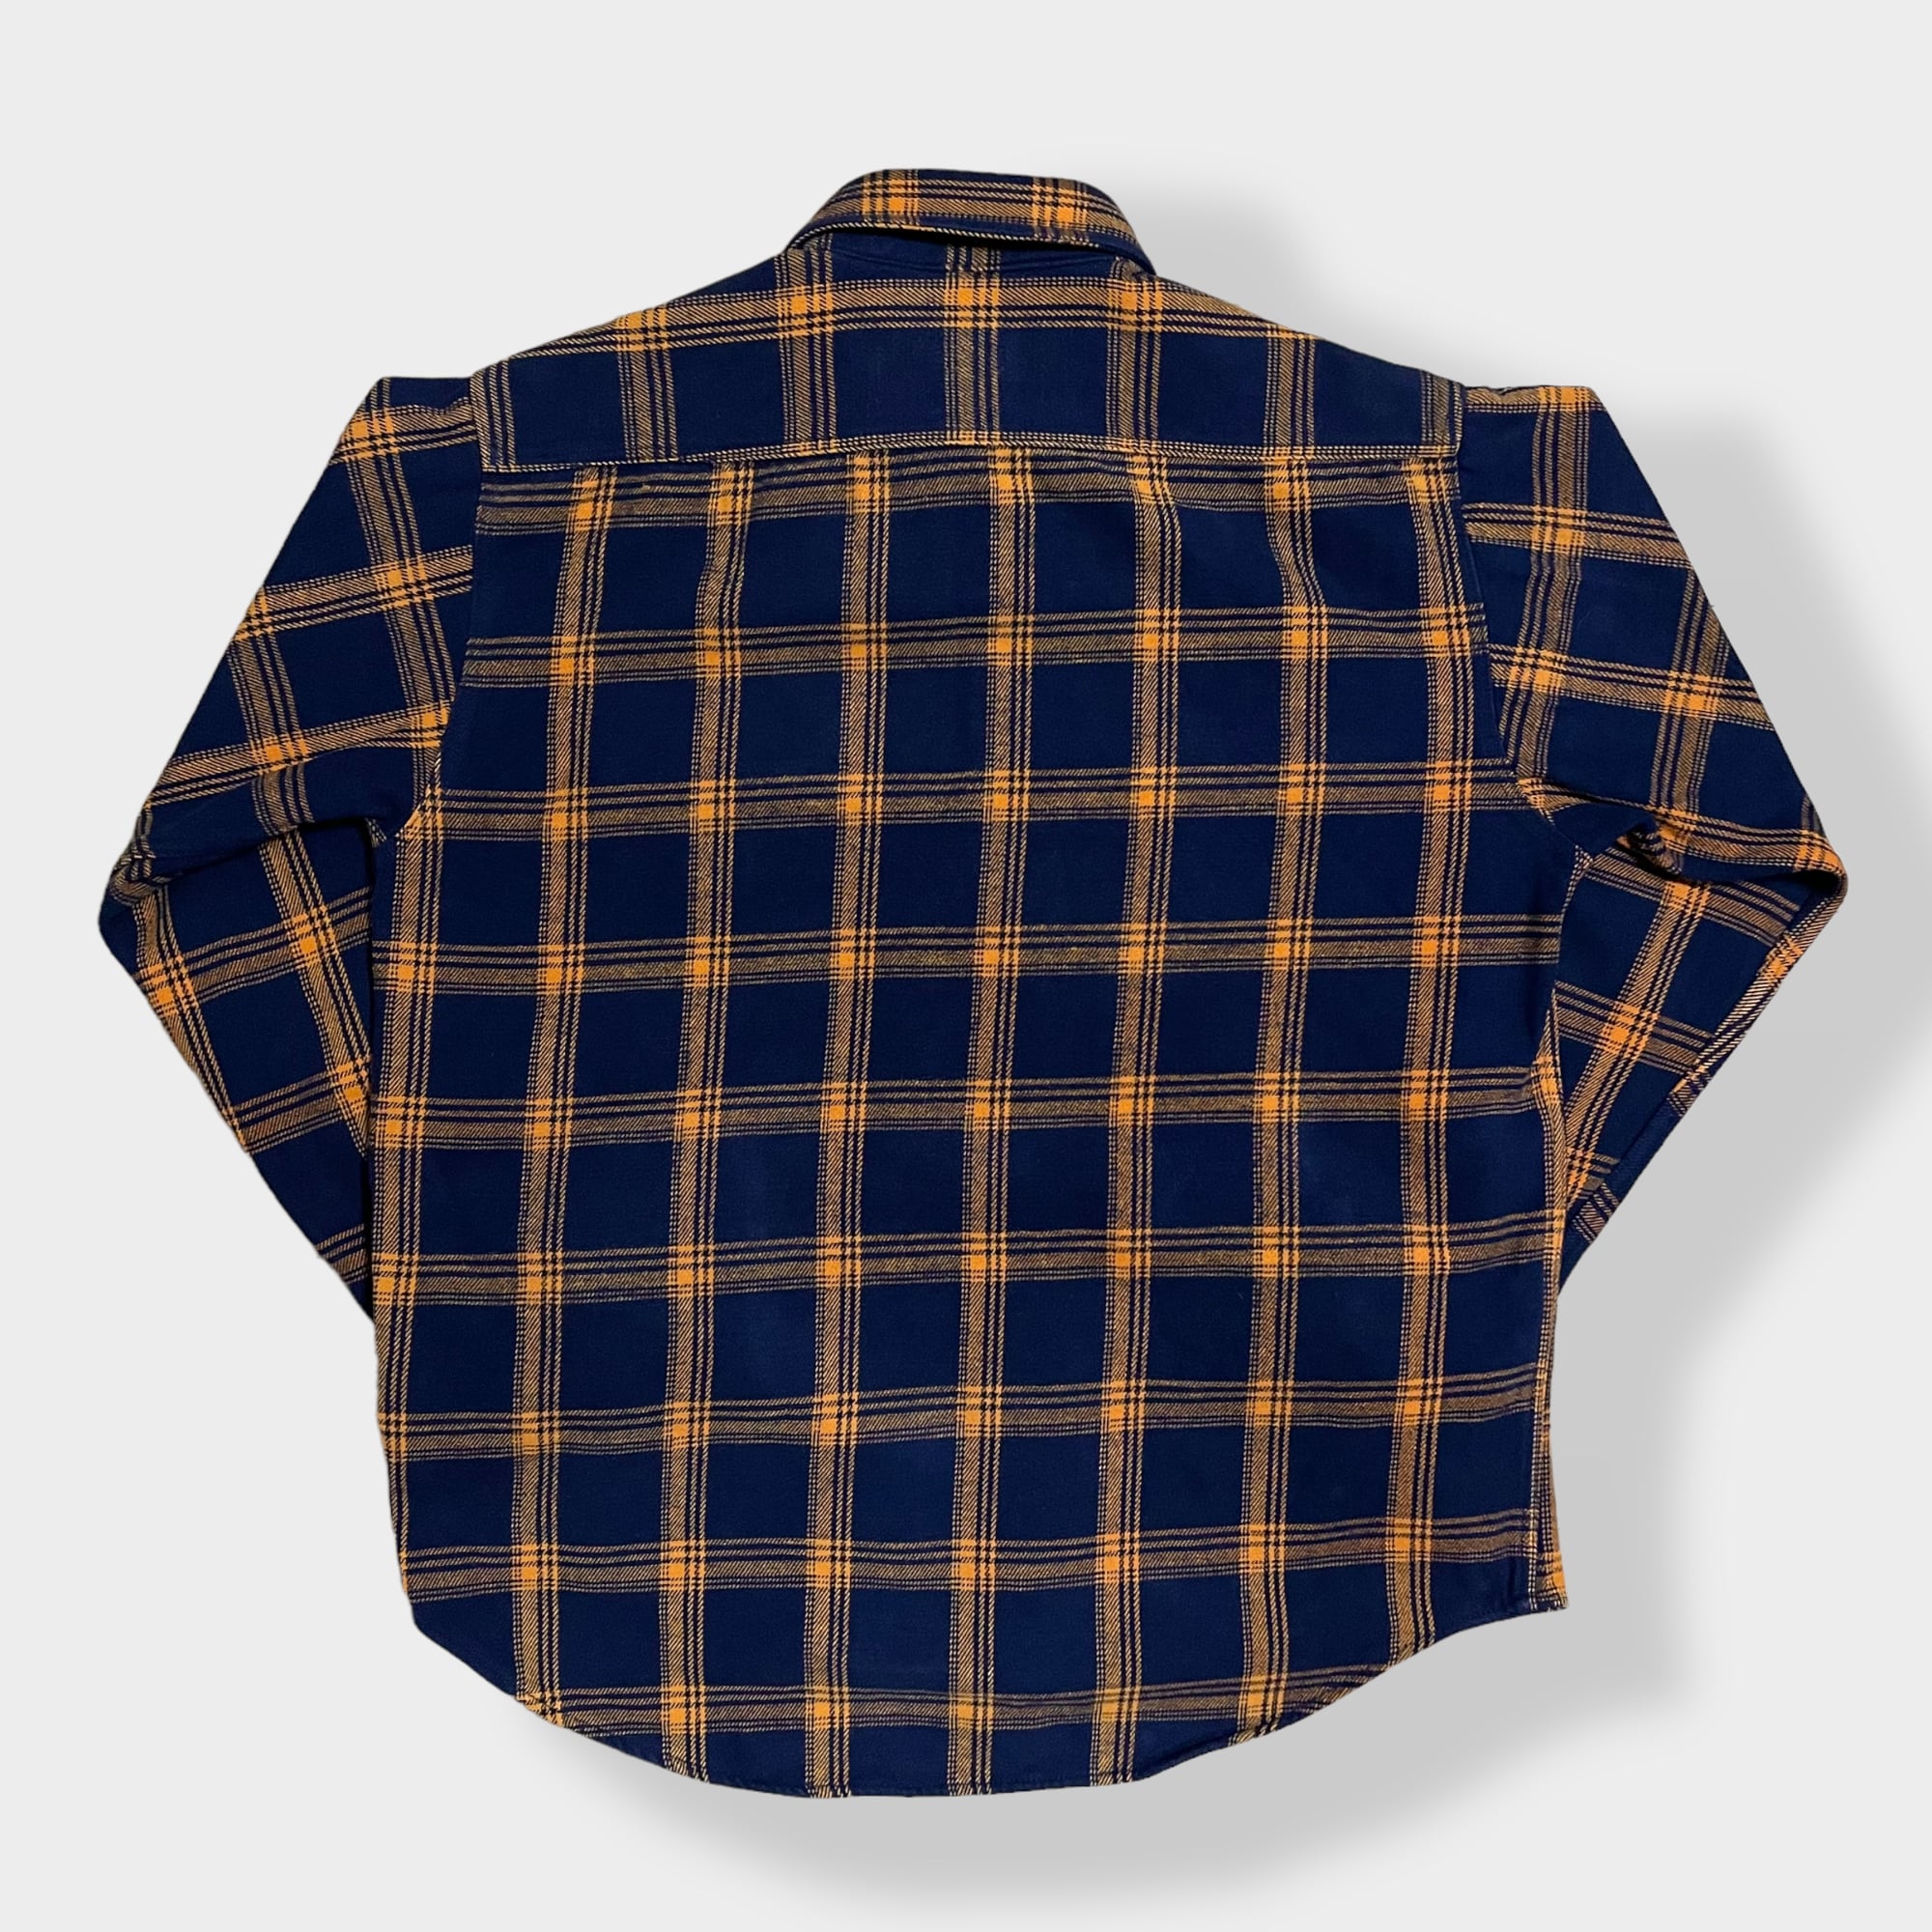 ■肉厚ヘビネル長袖ワークシャツ90sオンブレ柄でダークカラー総柄ヘビーネル